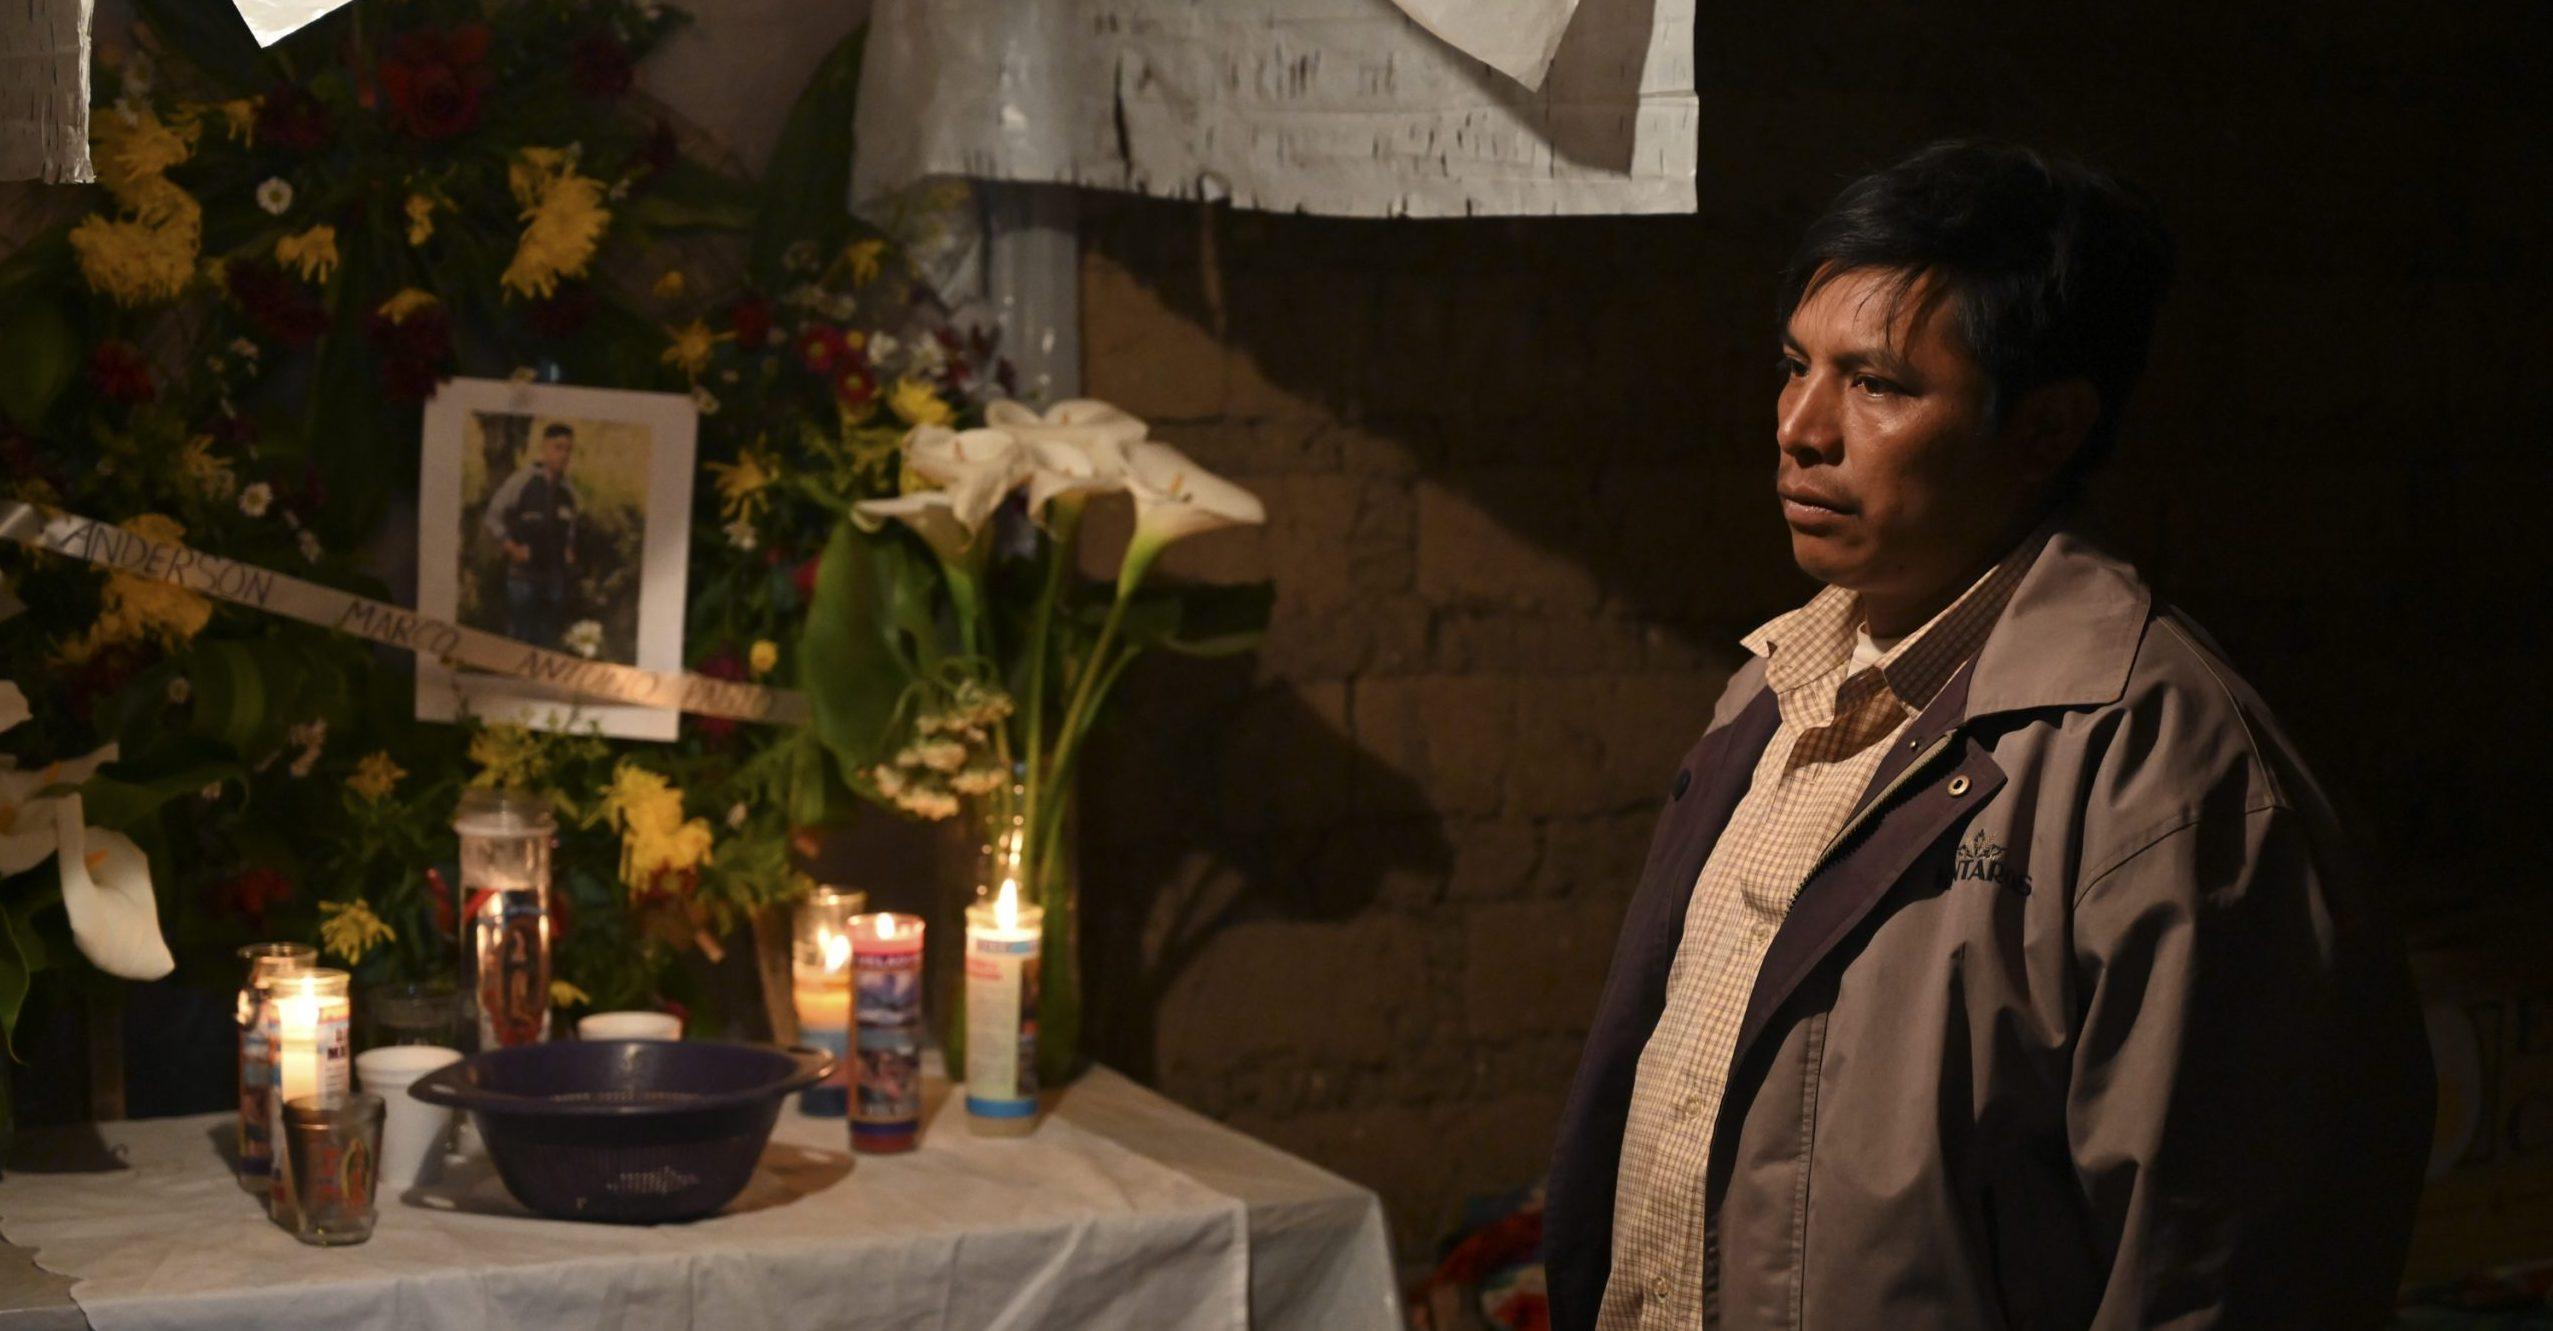 Familias de migrantes asesinados velan en Guatemala a sus hijos sin cuerpos ni certezas